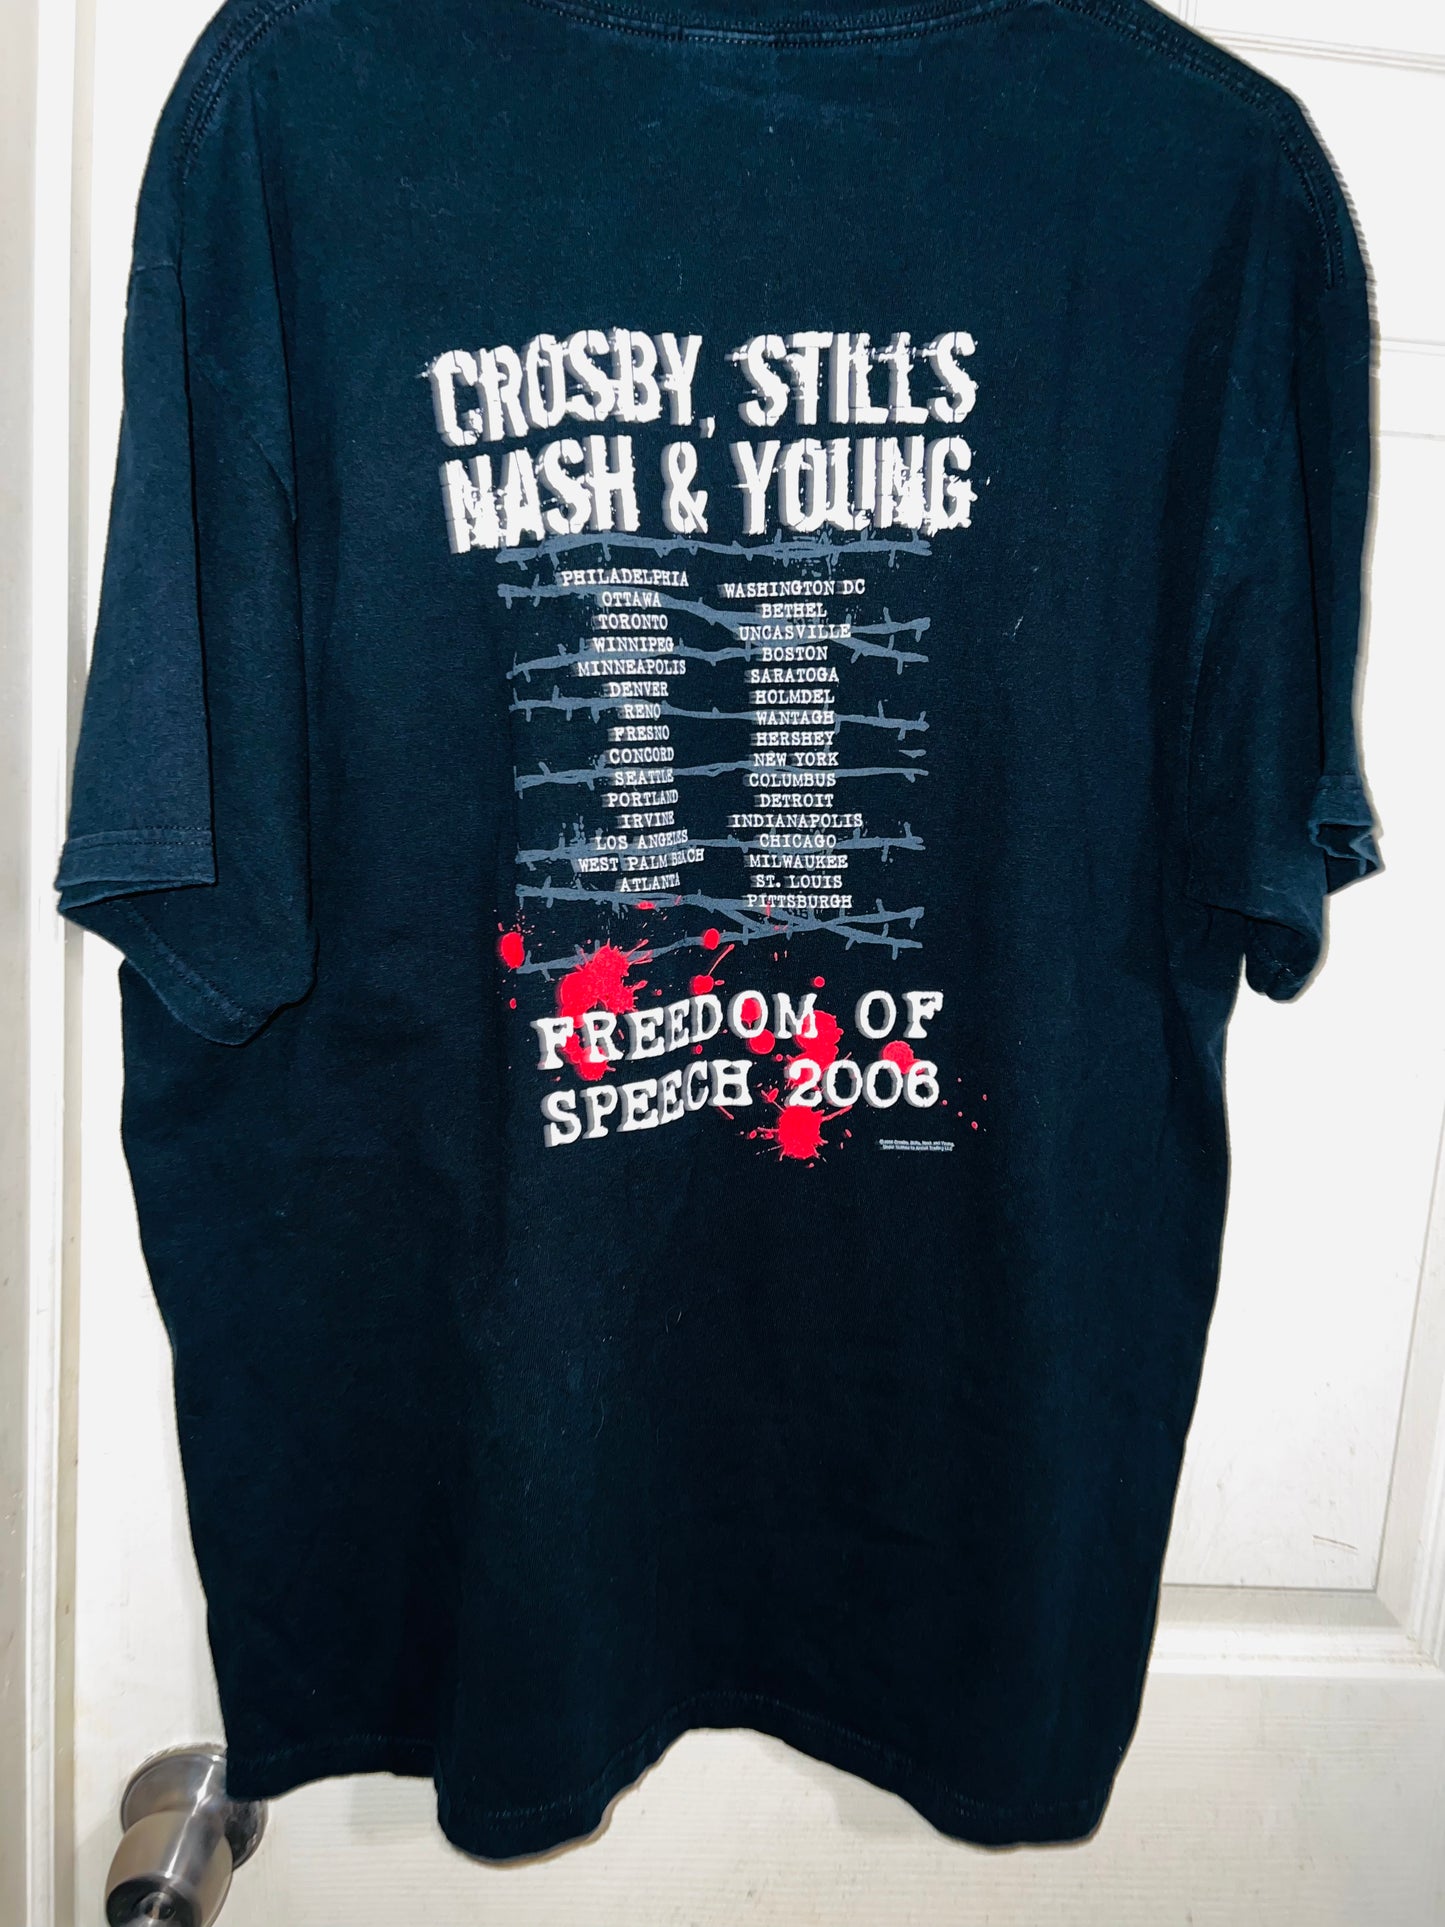 2008 Vintage Crosby, Stills, Nash & Young Tee